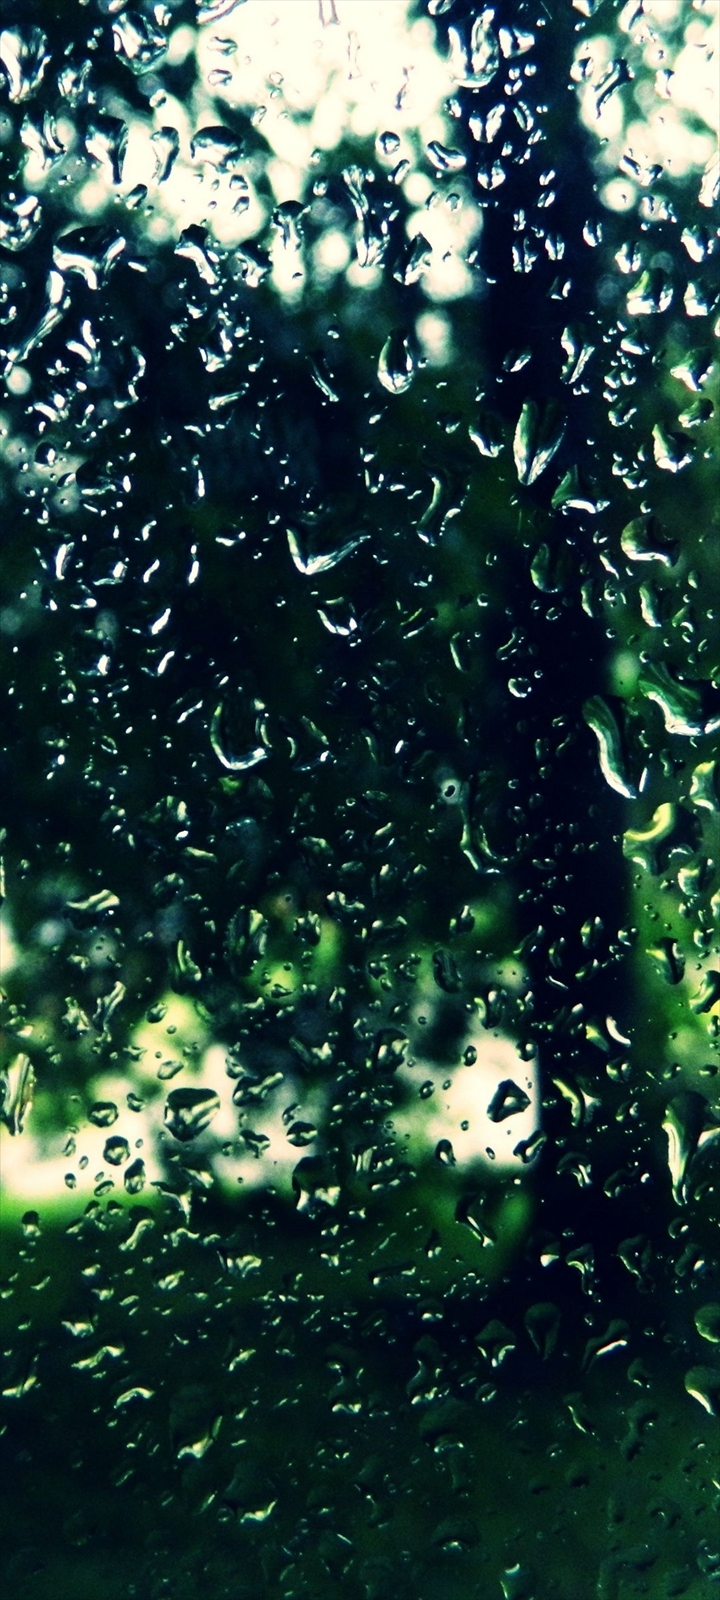 緑色の自然が透けて見える水滴がついたガラス Galaxy A32 5g 壁紙 待ち受け スマラン